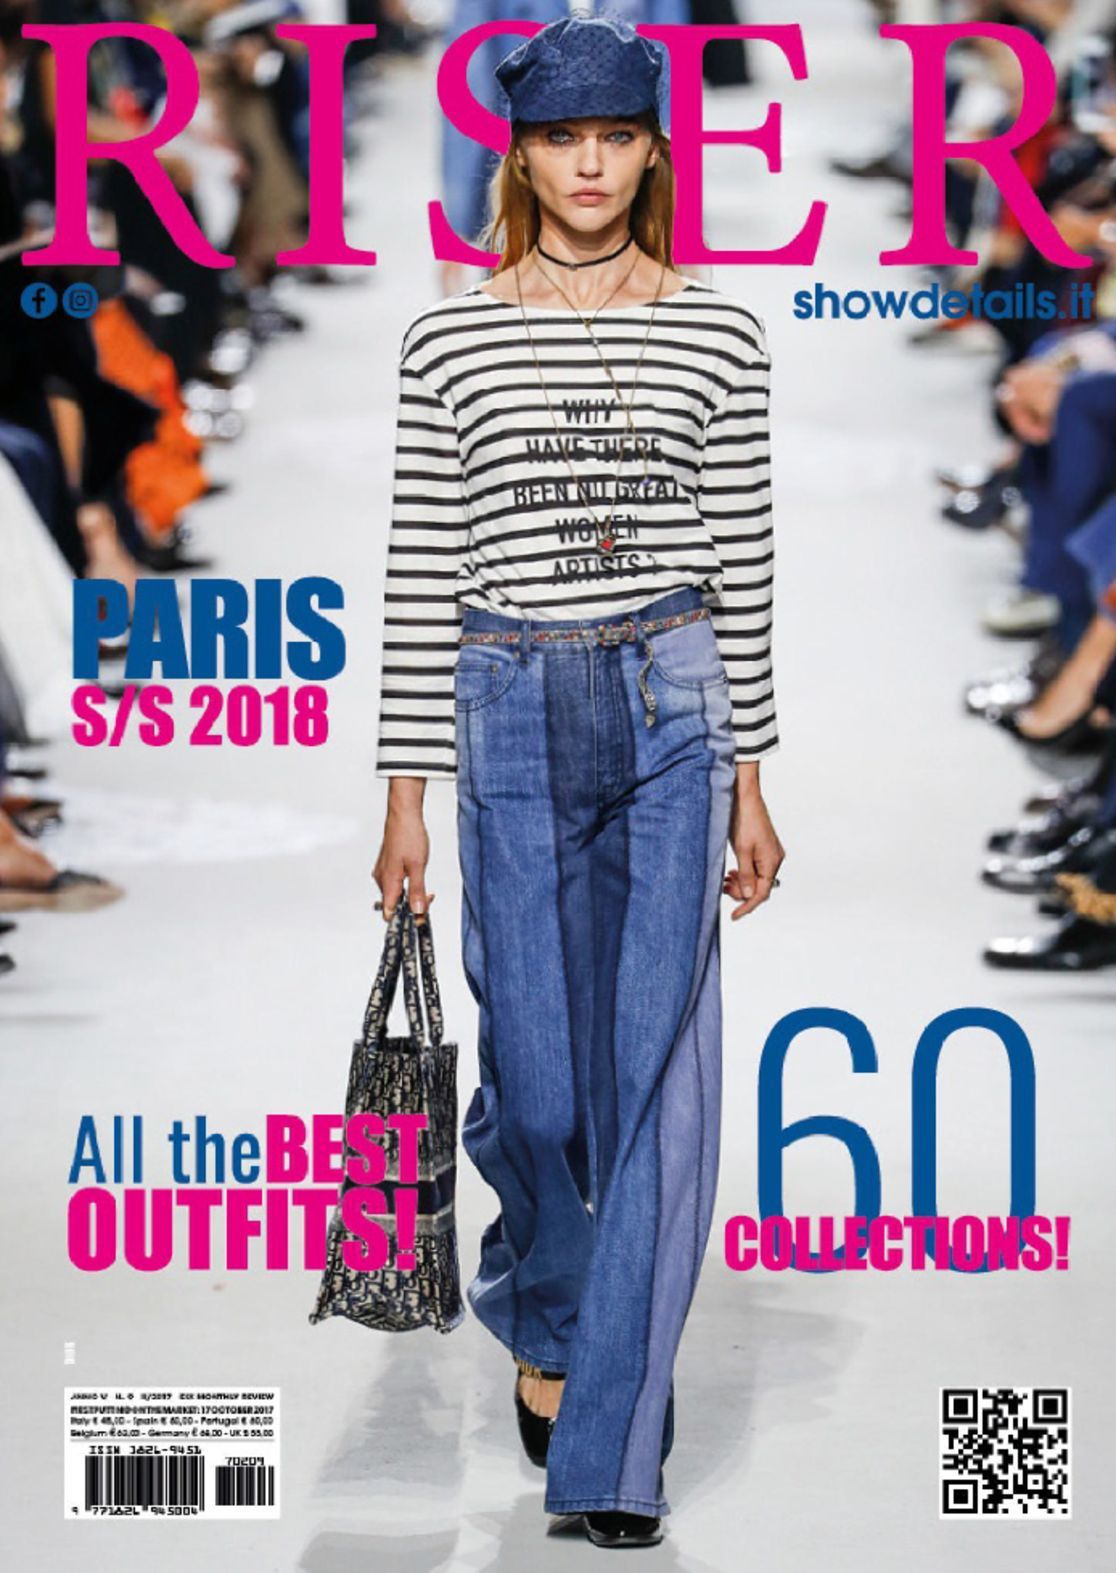 SHOWDETAILS RISER PARIS Magazine (Digital) - DiscountMags.com